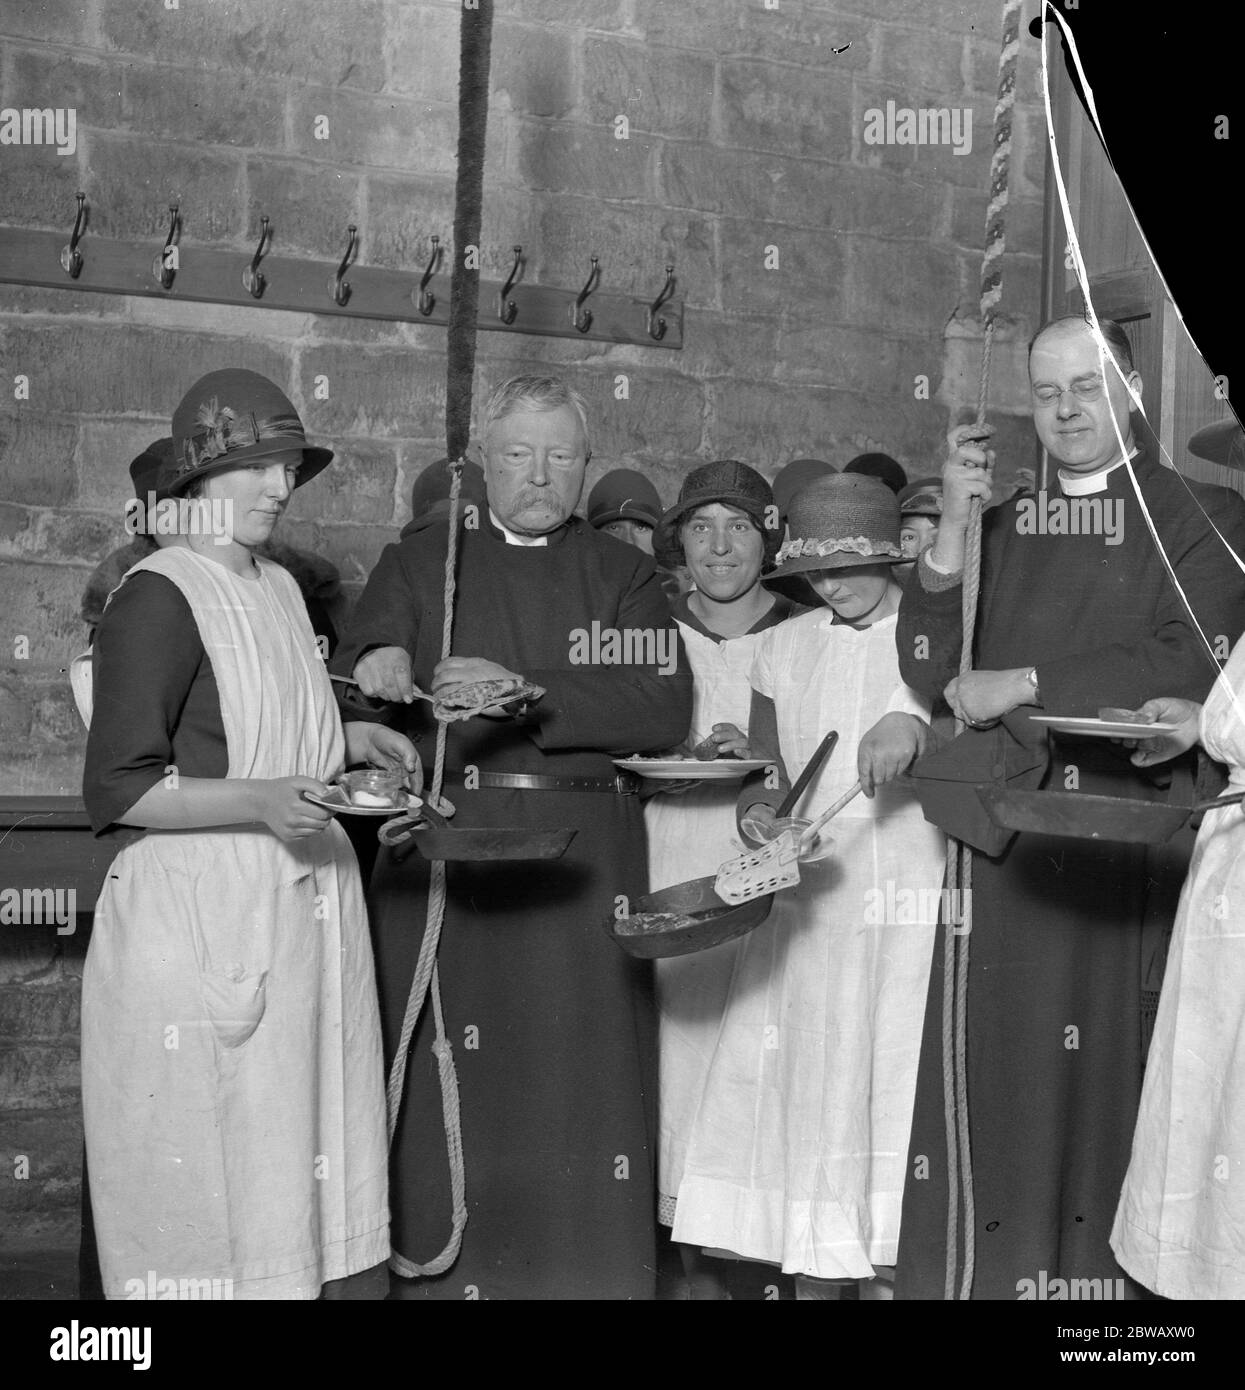 Une coutume pittoresque est observée le mardi Shrove à l'église Olney , Buckinghamshire , lorsque des cloches de crêpes sont sonné du beffroi pour la naissance et la mort de la crêpe . Photos montre des grooms sur le point de prendre les crêpes . 16 février 1926 Banque D'Images